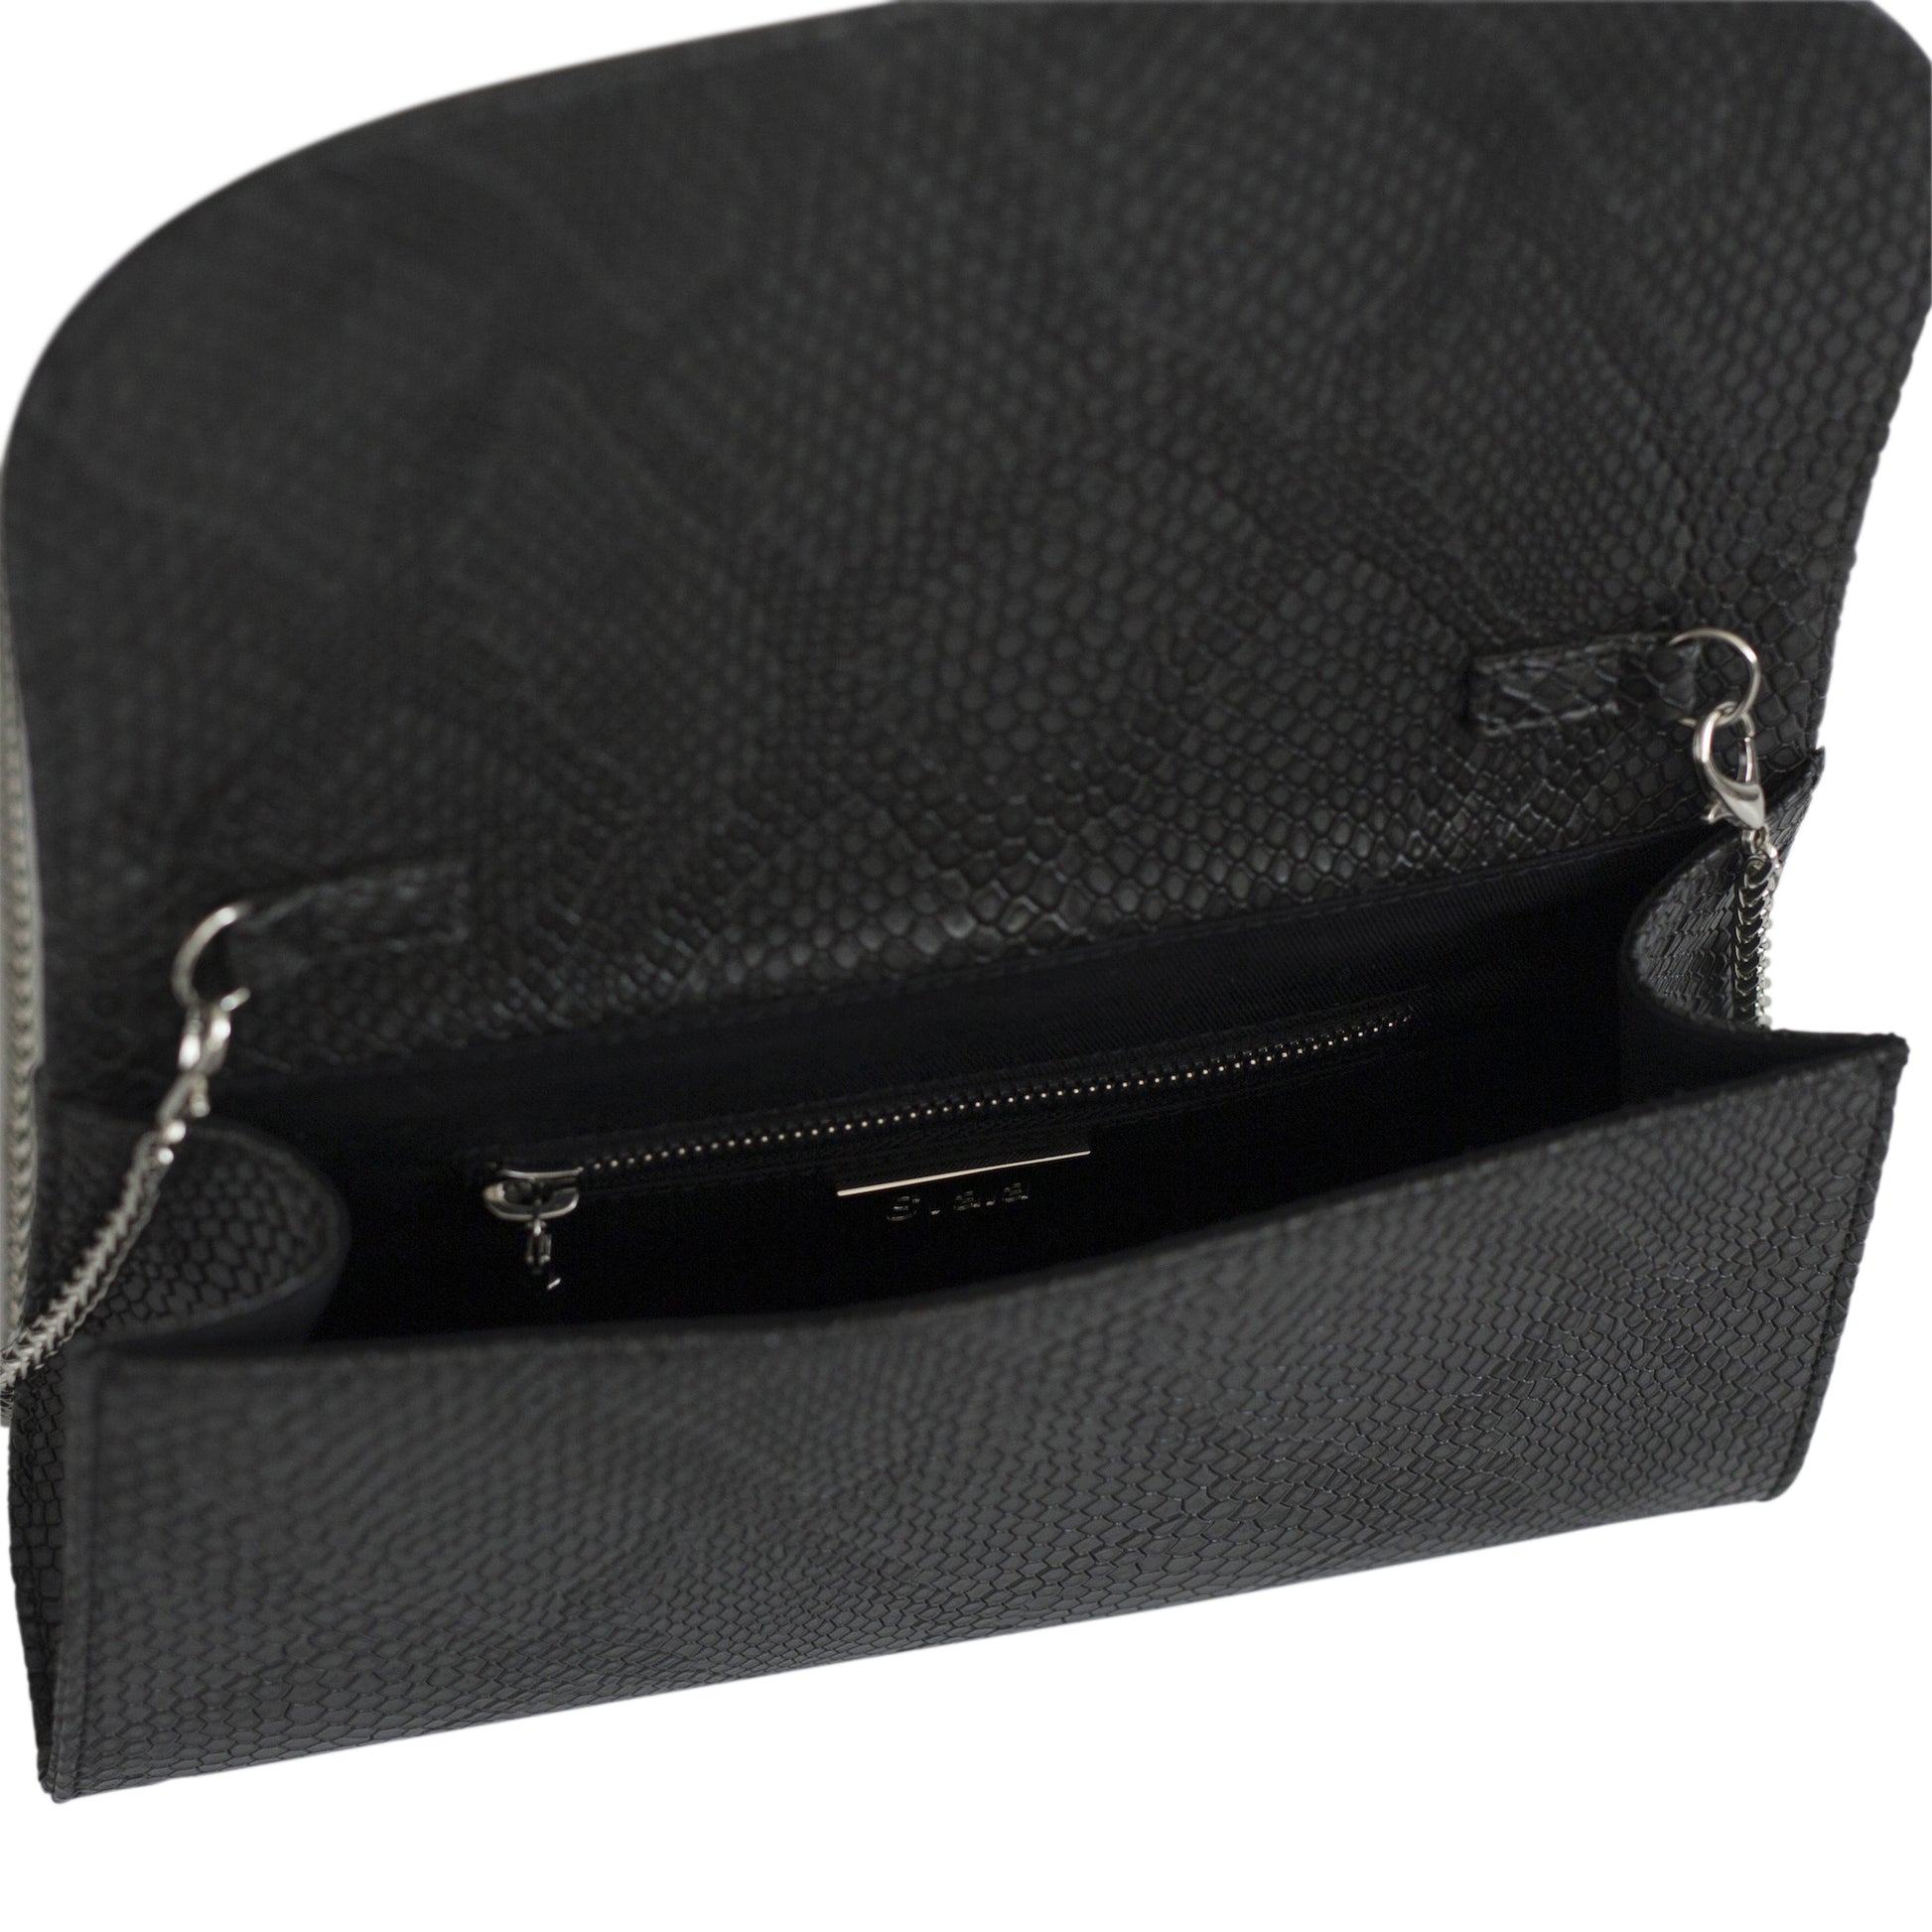 black braided leather Dita clutch bag